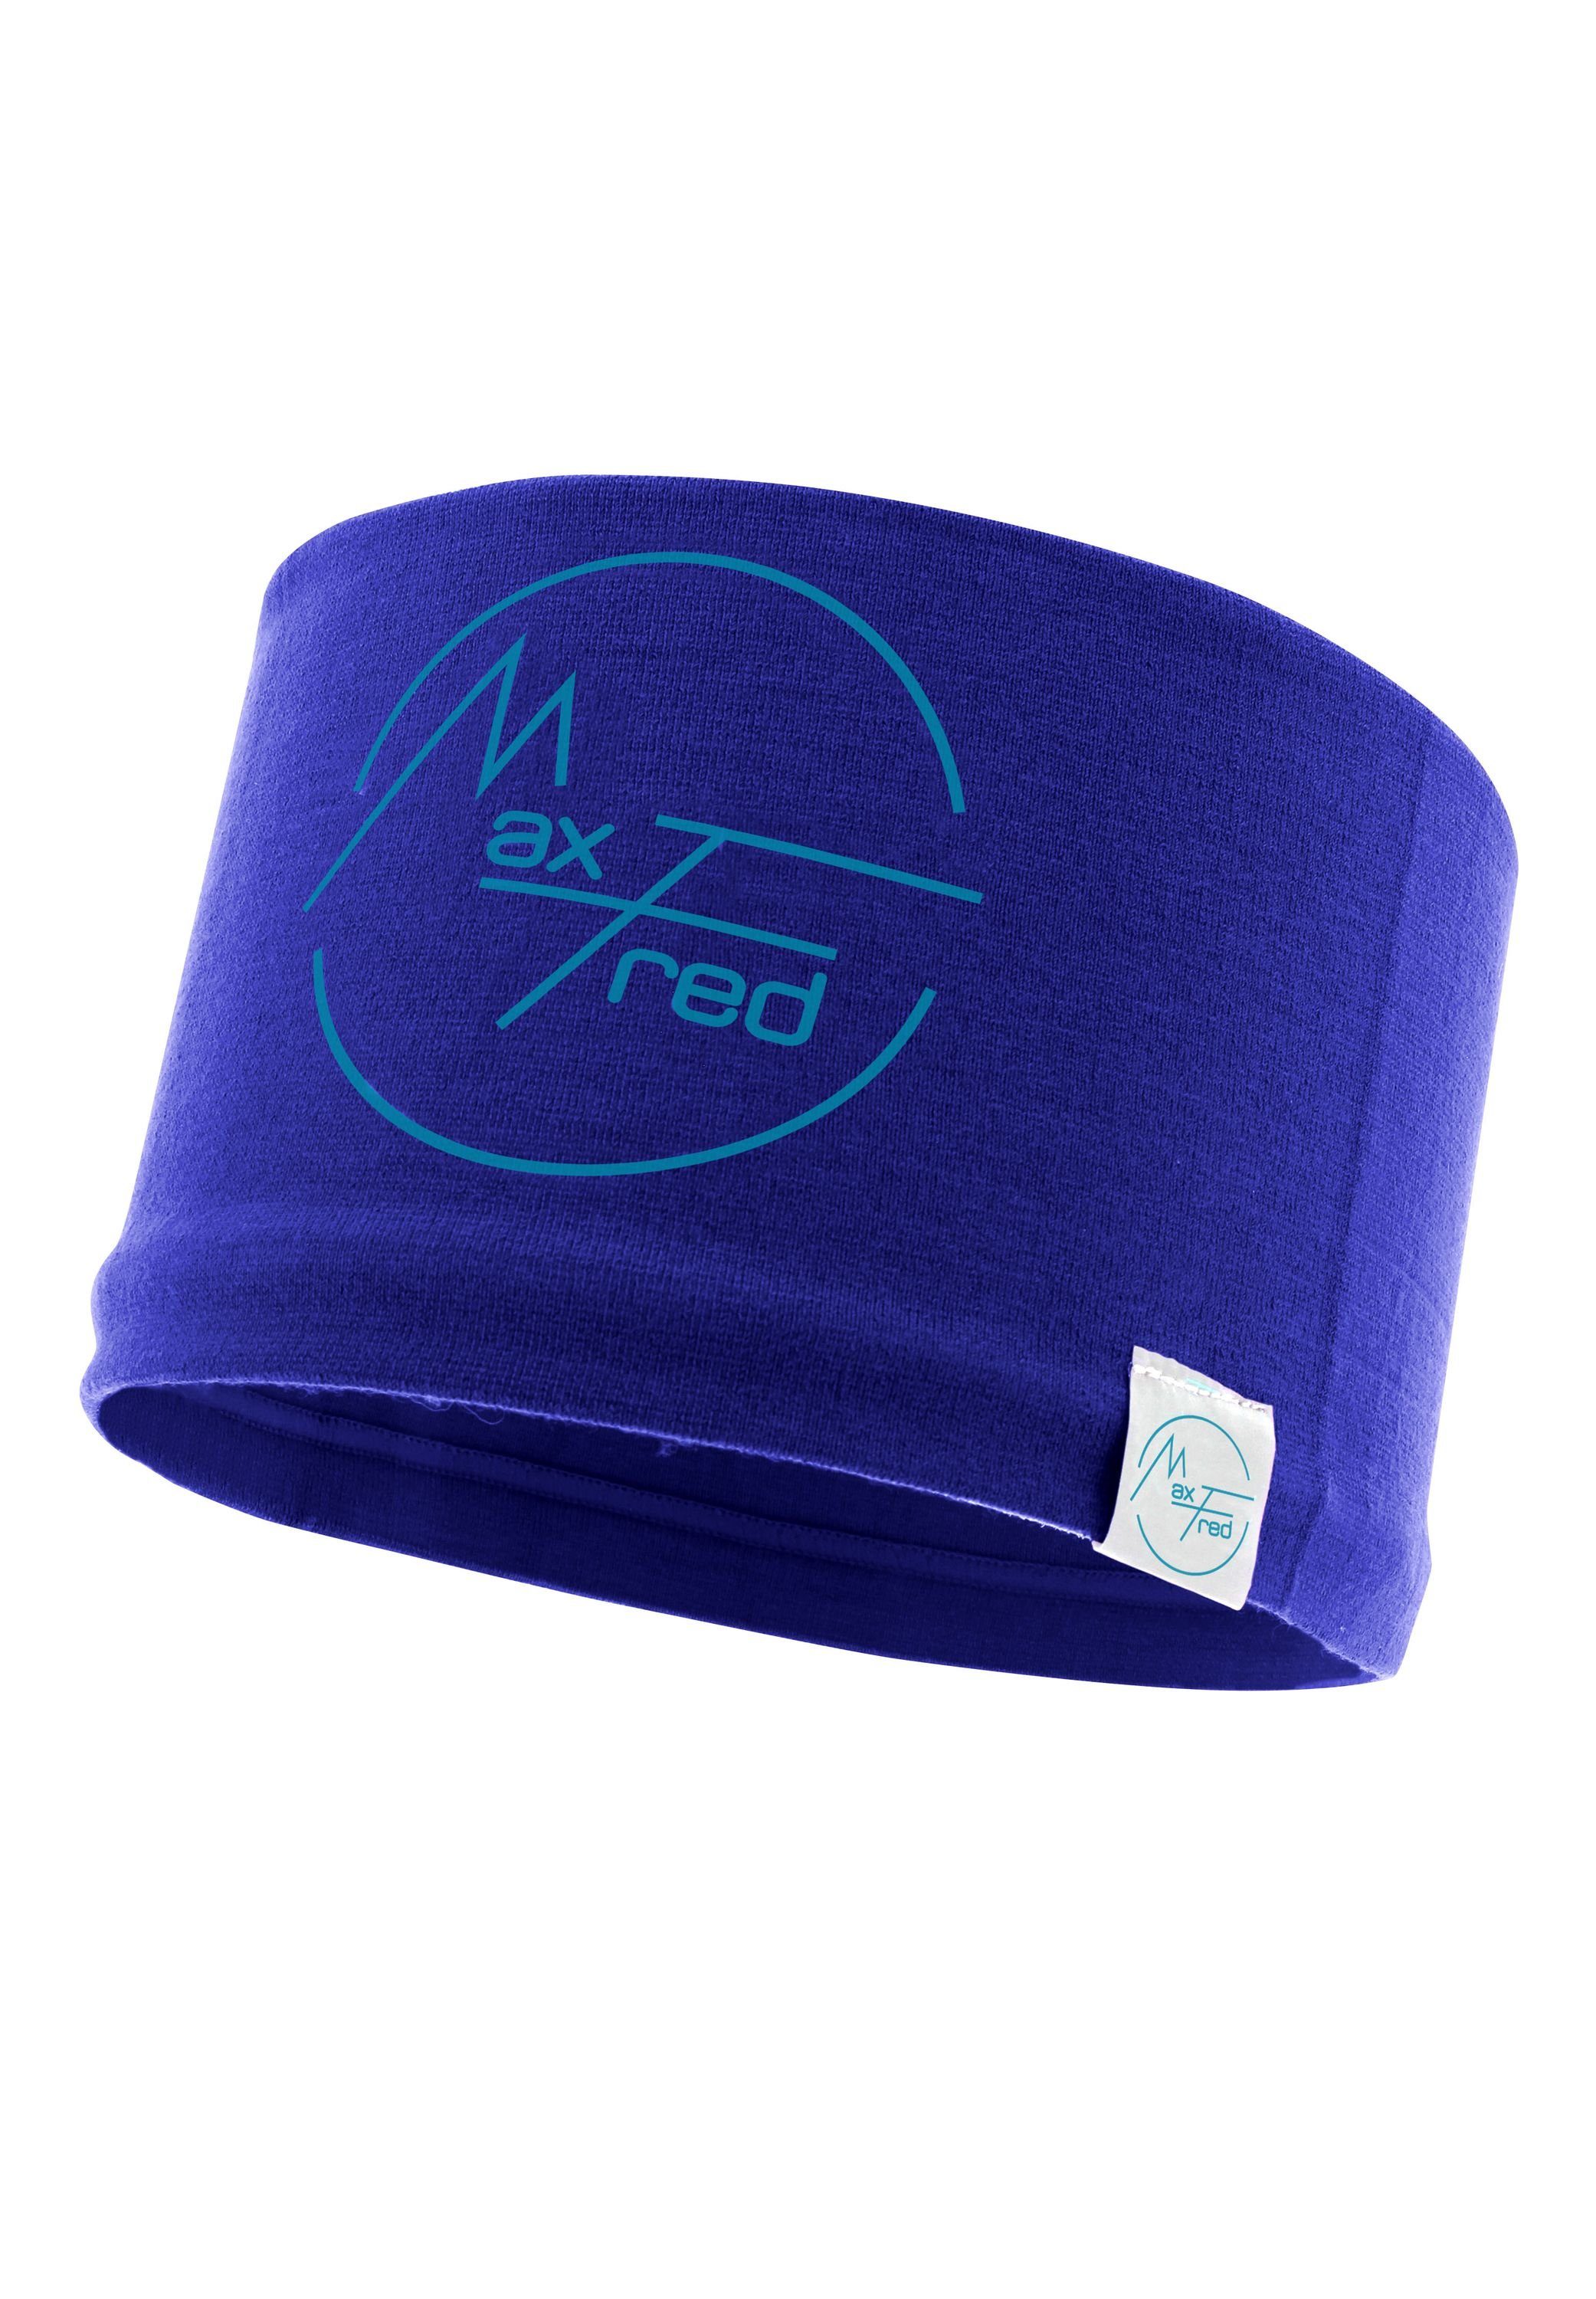 Damen Stirnbänder Maxfred Stirnband Bamboo ocean blue Multifunktionstuch Elastisch, Nachhaltig, geringe Geruchsaufnahme, Ultrawe